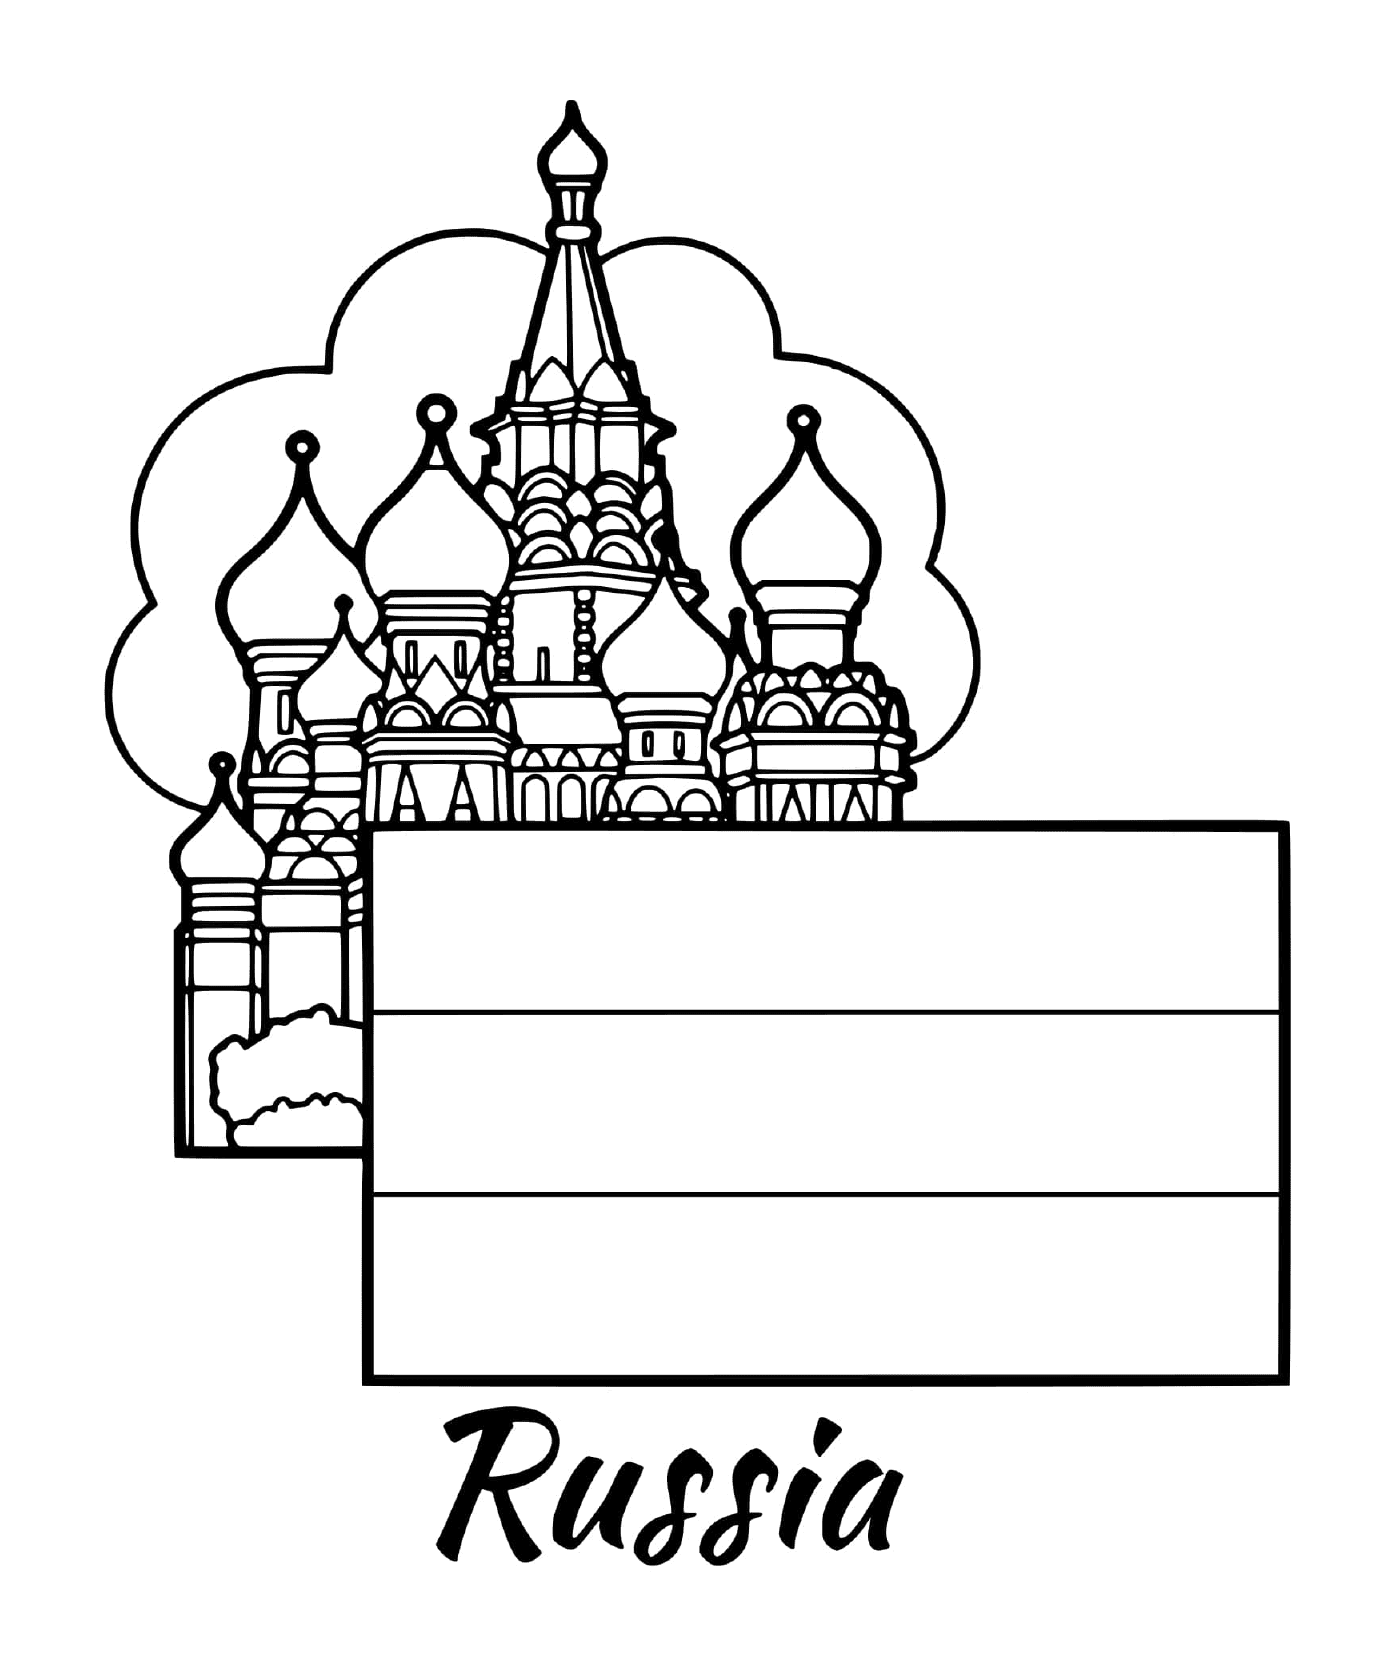  俄罗斯国旗,莫斯科 